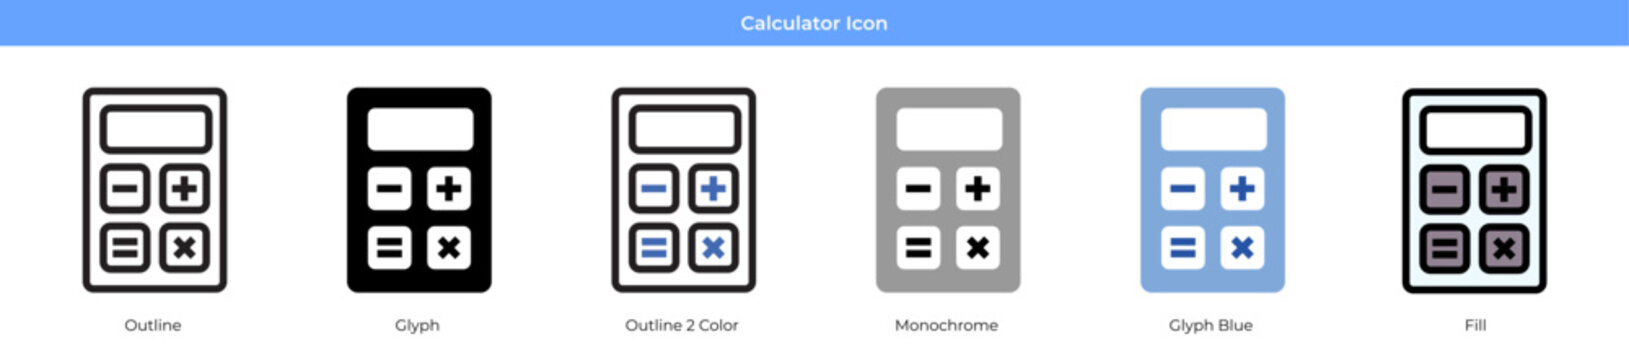 Calculator Icon Set